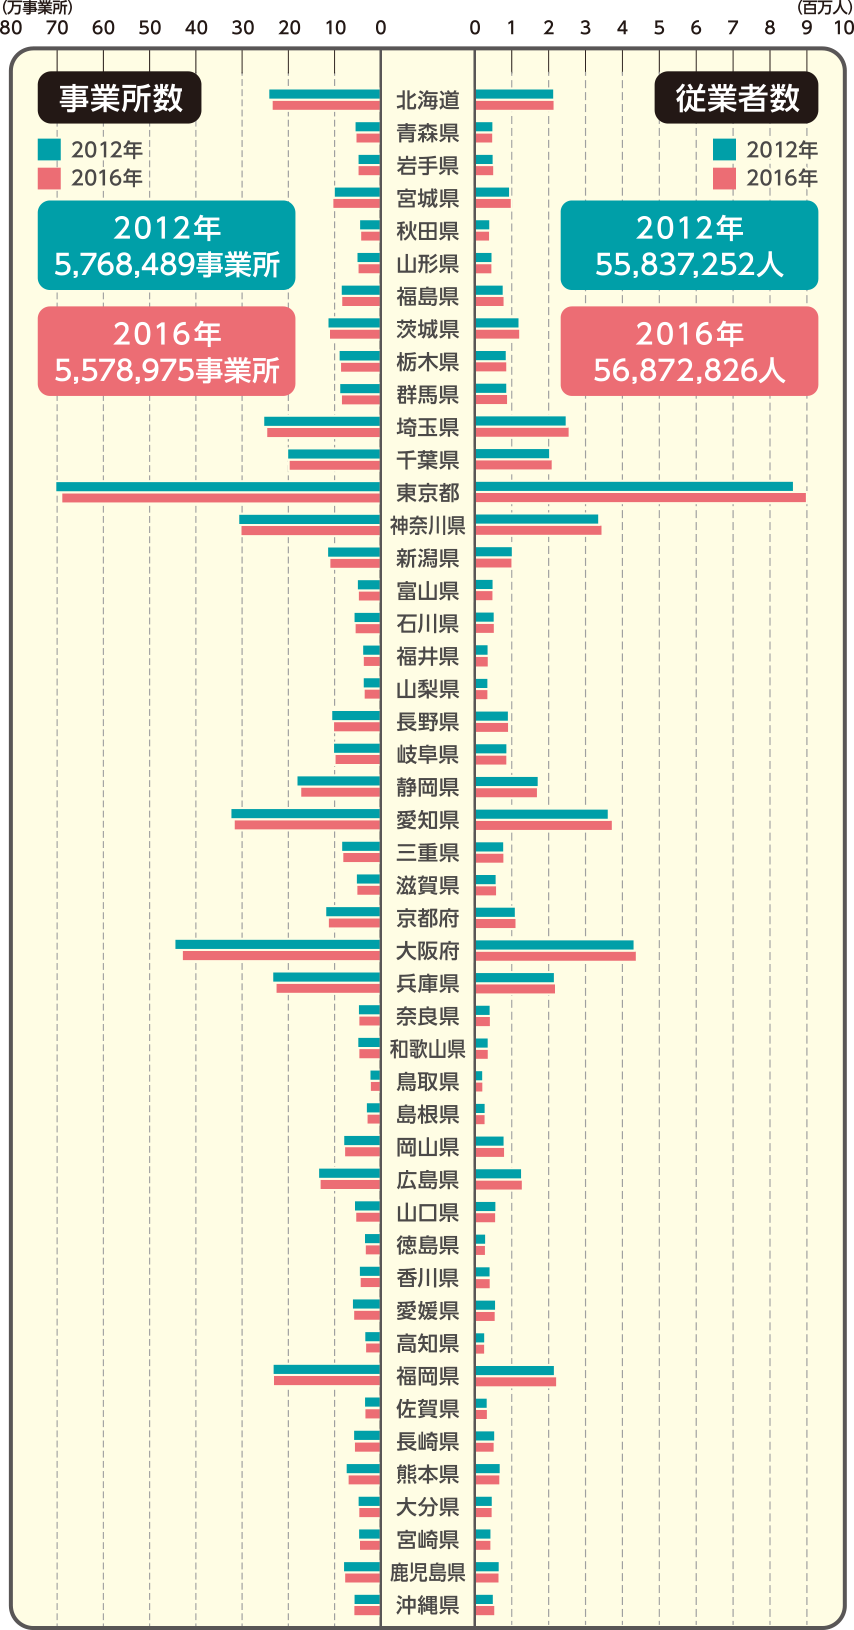 都道府県別事業所数及び従業者数の図